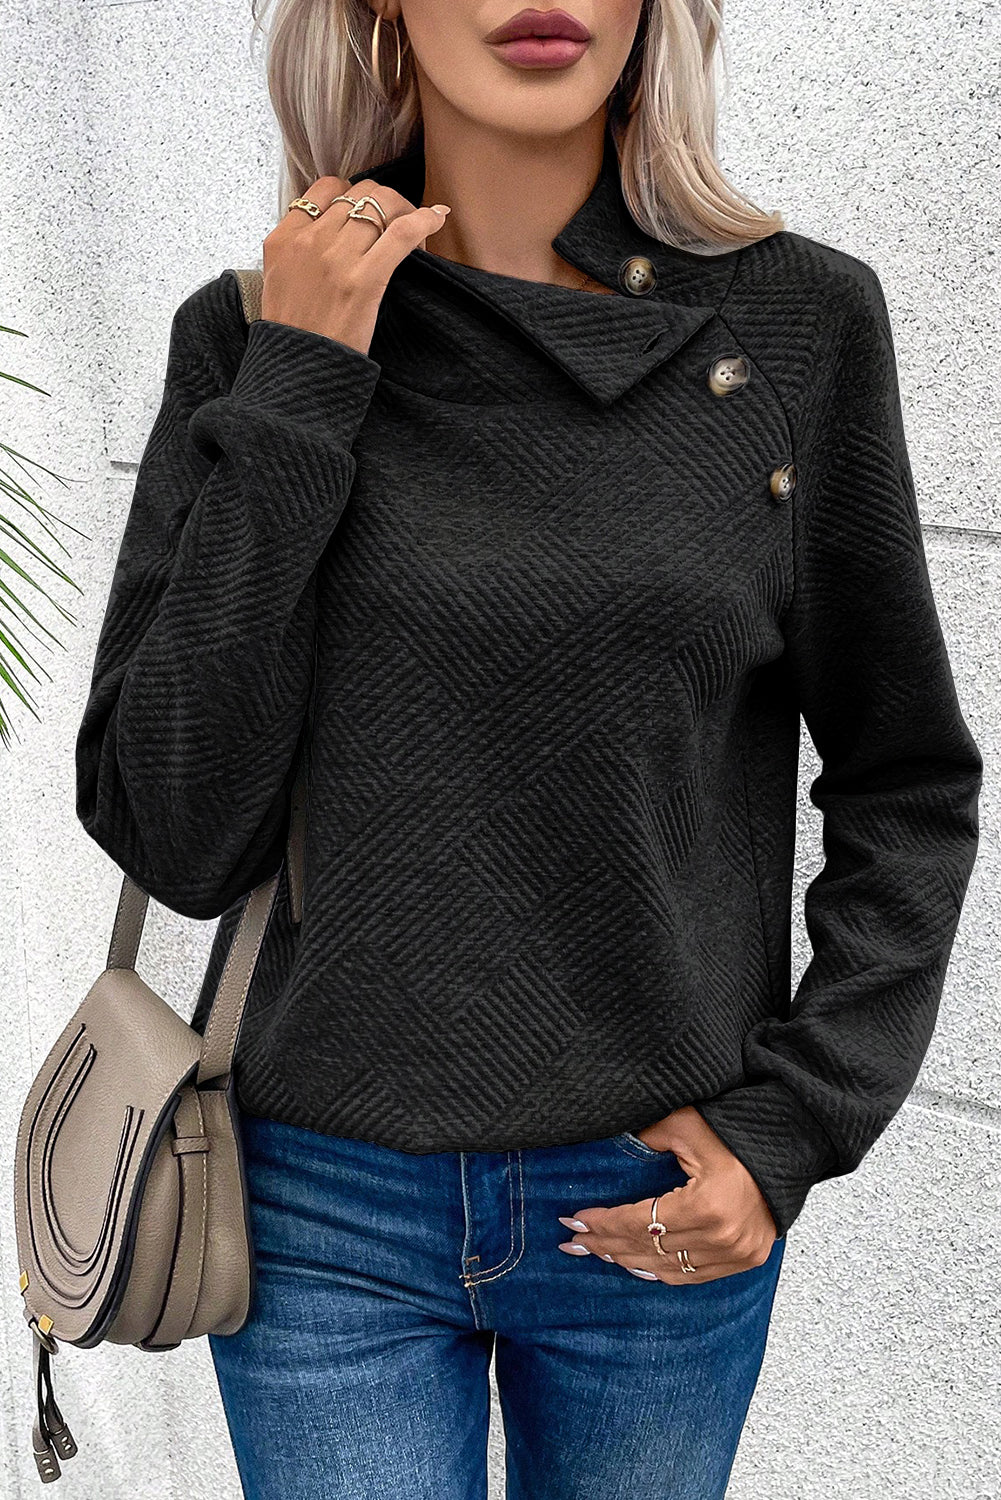 Schwarzes, strukturiertes Sweatshirt mit asymmetrischem Knopfdetail und hohem Kragen